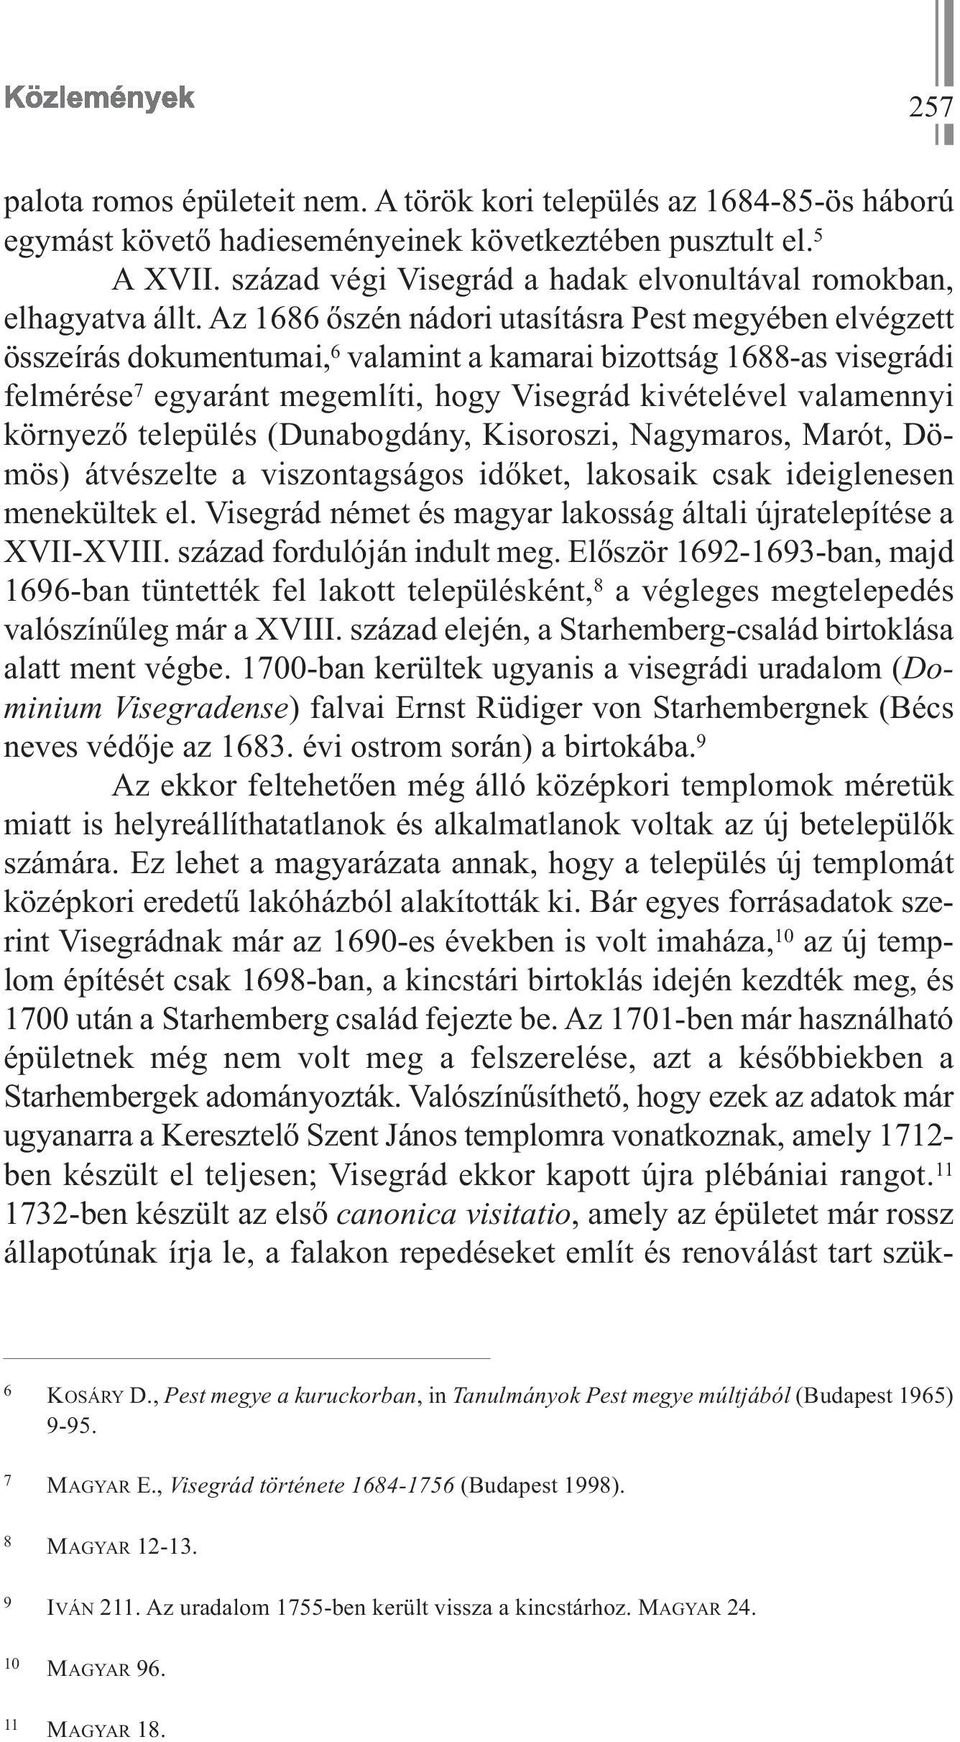 Az 1686 őszén nádori utasításra Pest megyében elvégzett összeírás dokumentumai, 6 valamint a kamarai bizottság 1688-as visegrádi felmérése 7 egyaránt megemlíti, hogy Visegrád kivételével valamennyi